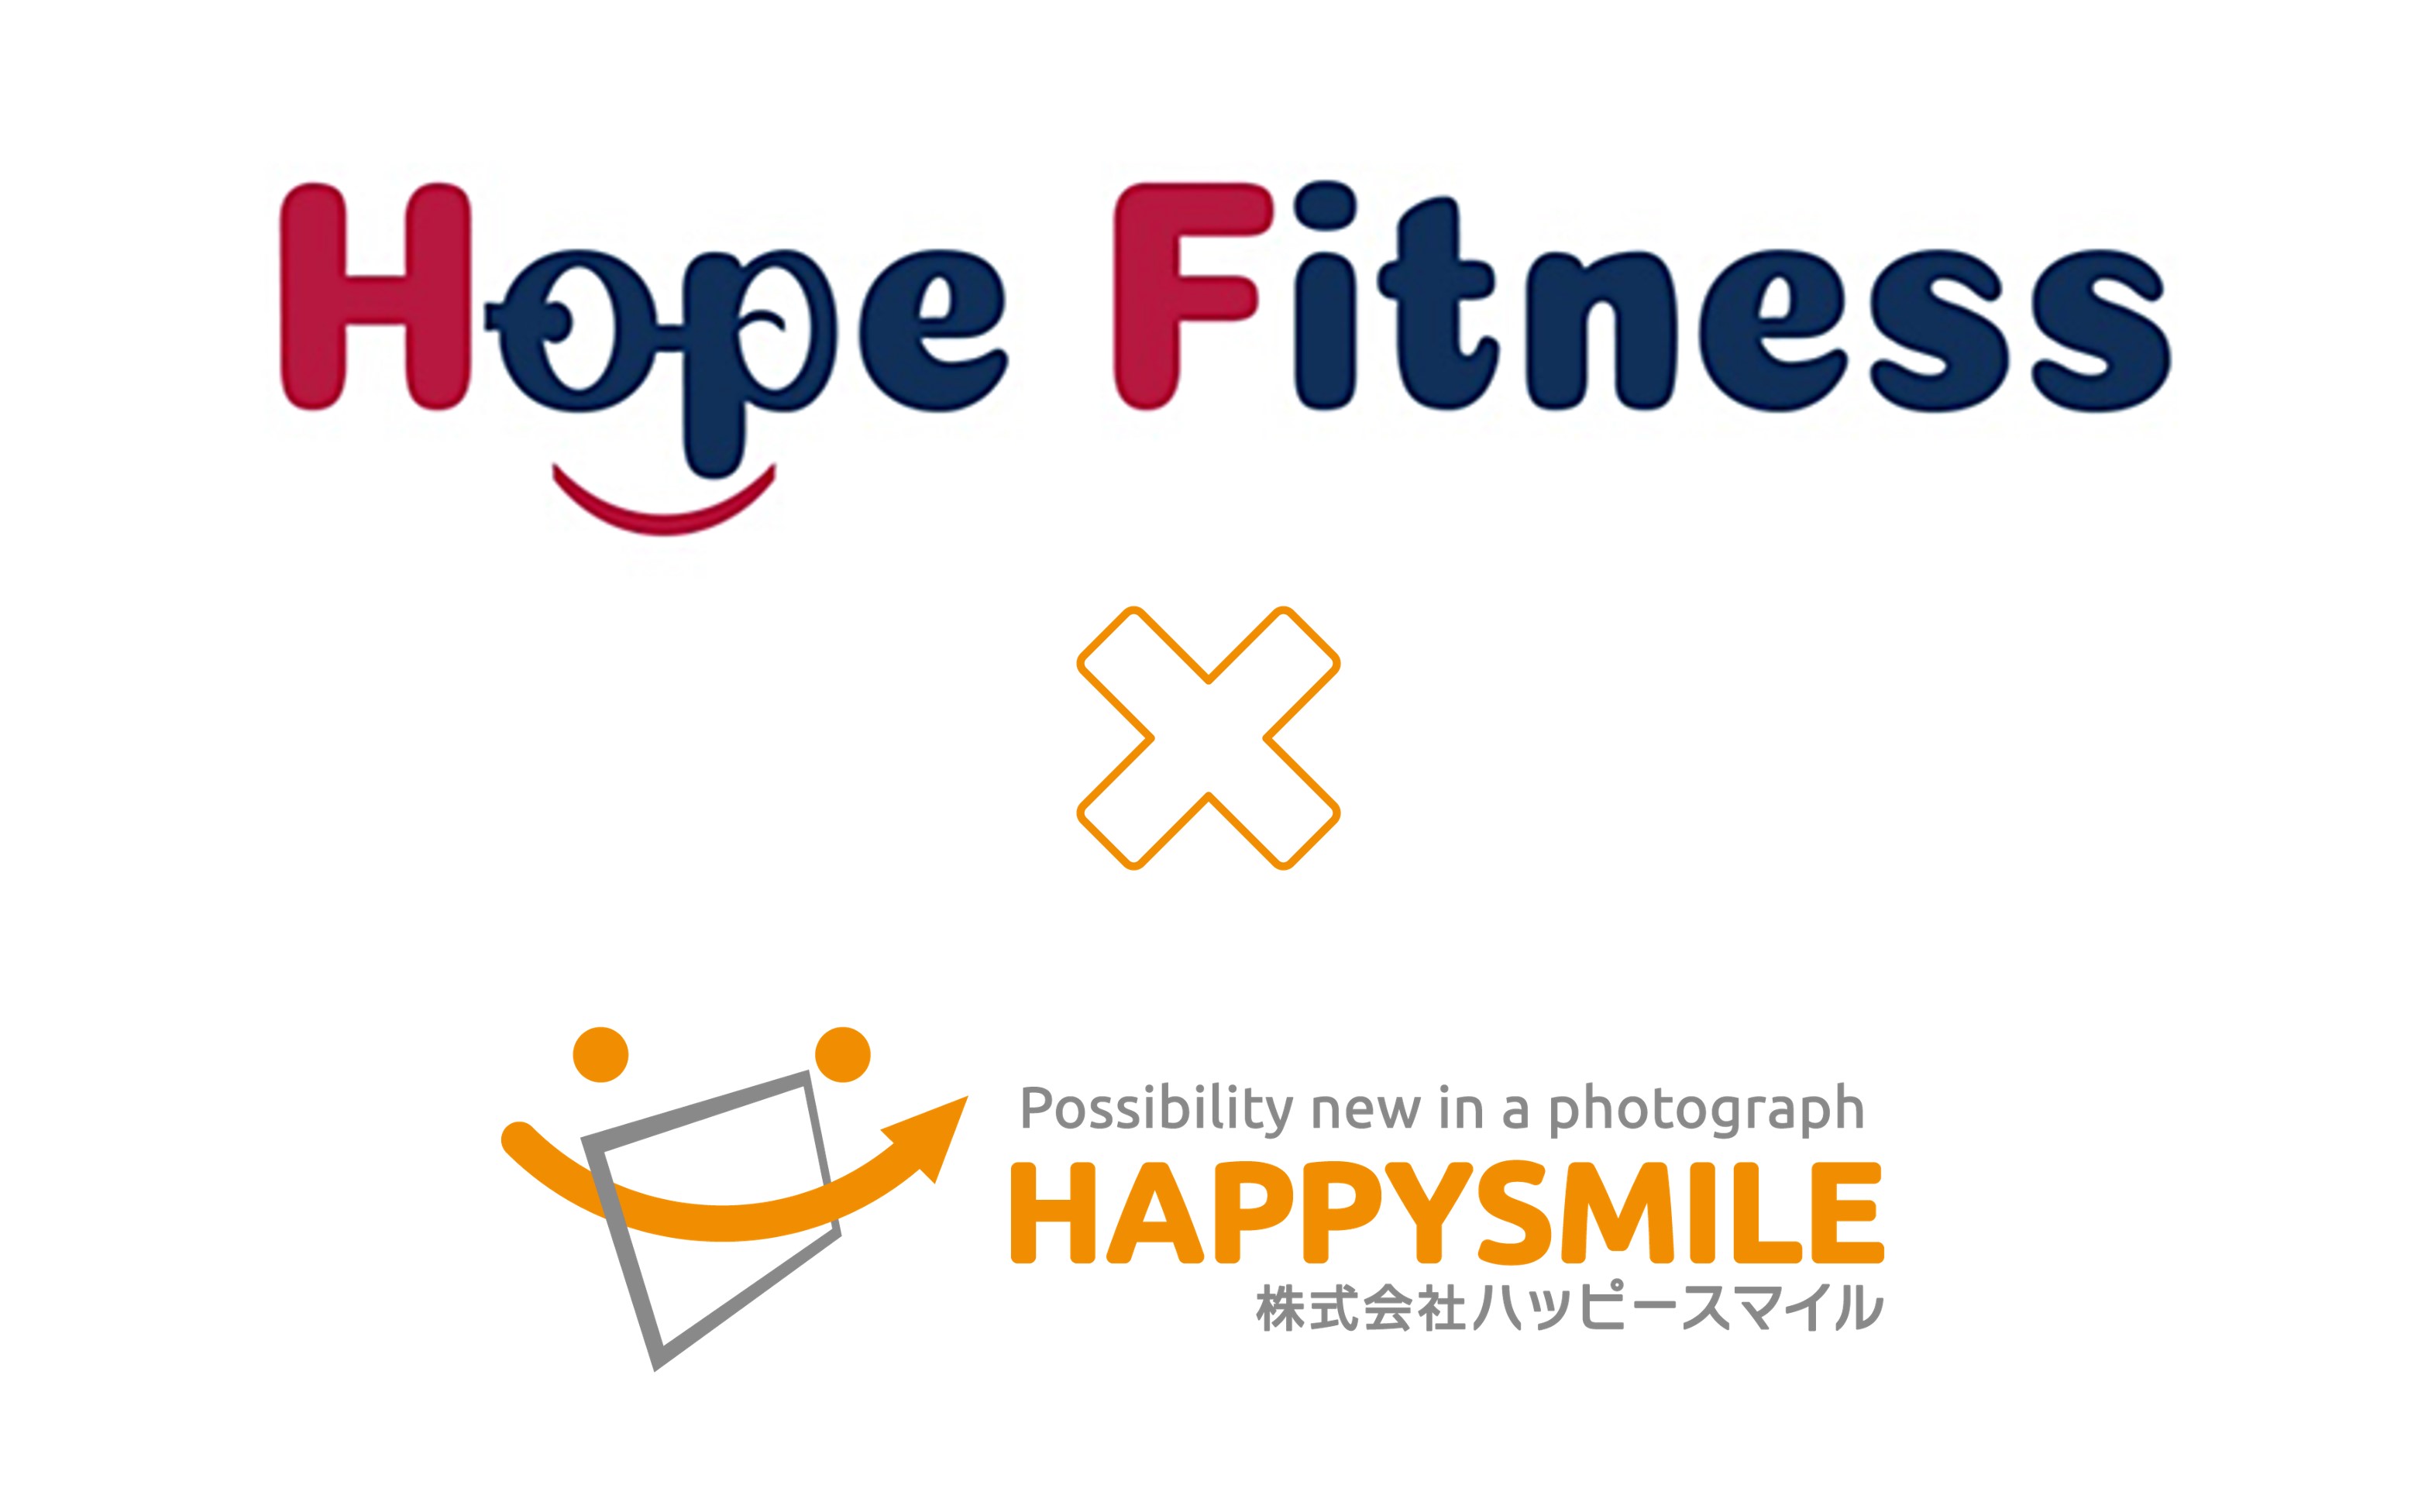 Hope Fitness×株式会社ハッピースマイル 　写真販売プラットフォームサービス「みんなのおもいで.com」を導入